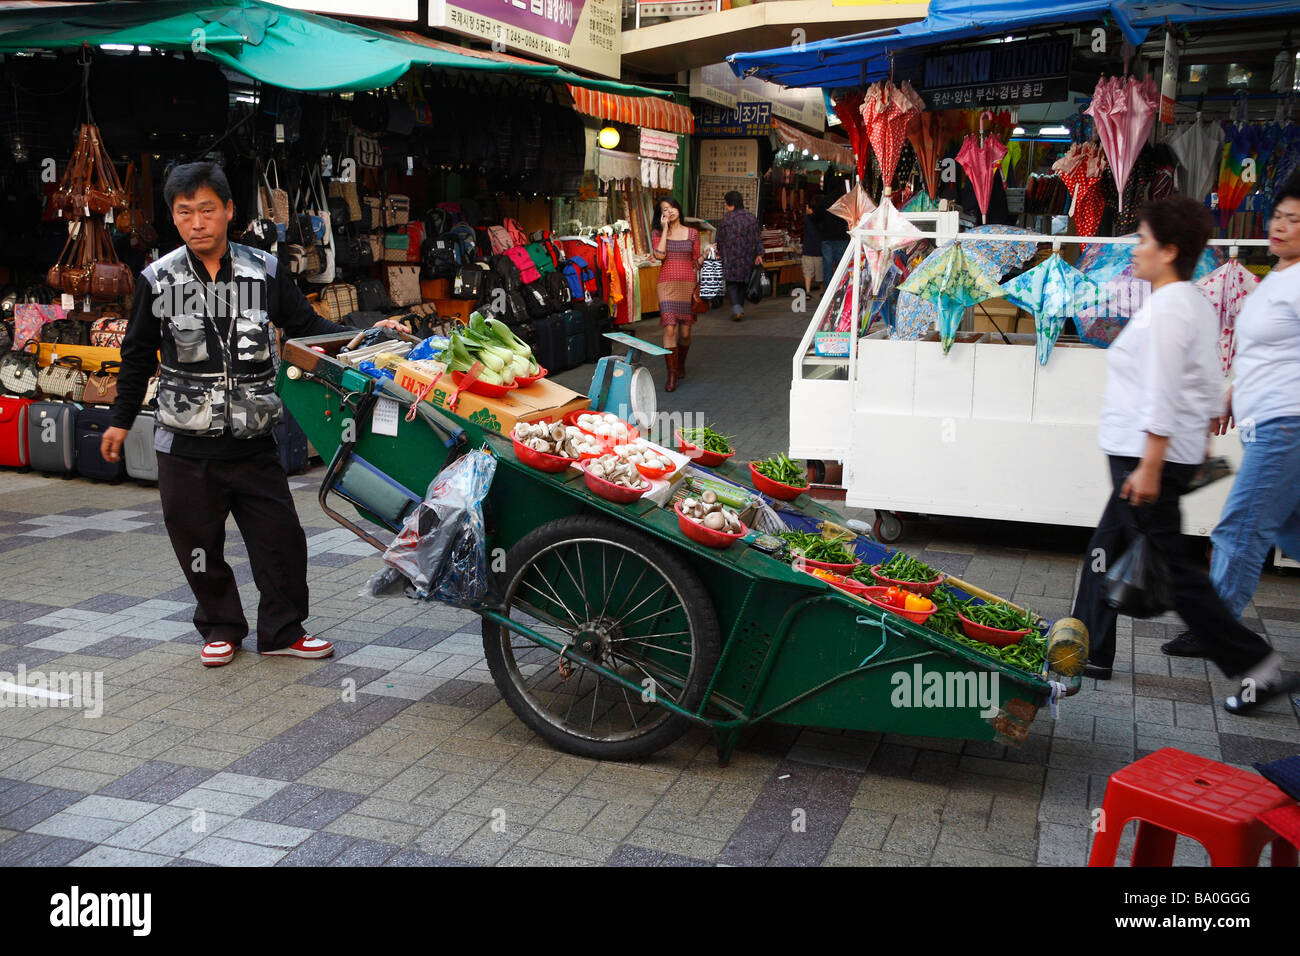 Ein Kaufmann seine frische Produkte für den Verkauf auf einen großen Wagen in der Mitte der Straße Marktplatz in der Stadt Busan anzeigen Stockfoto